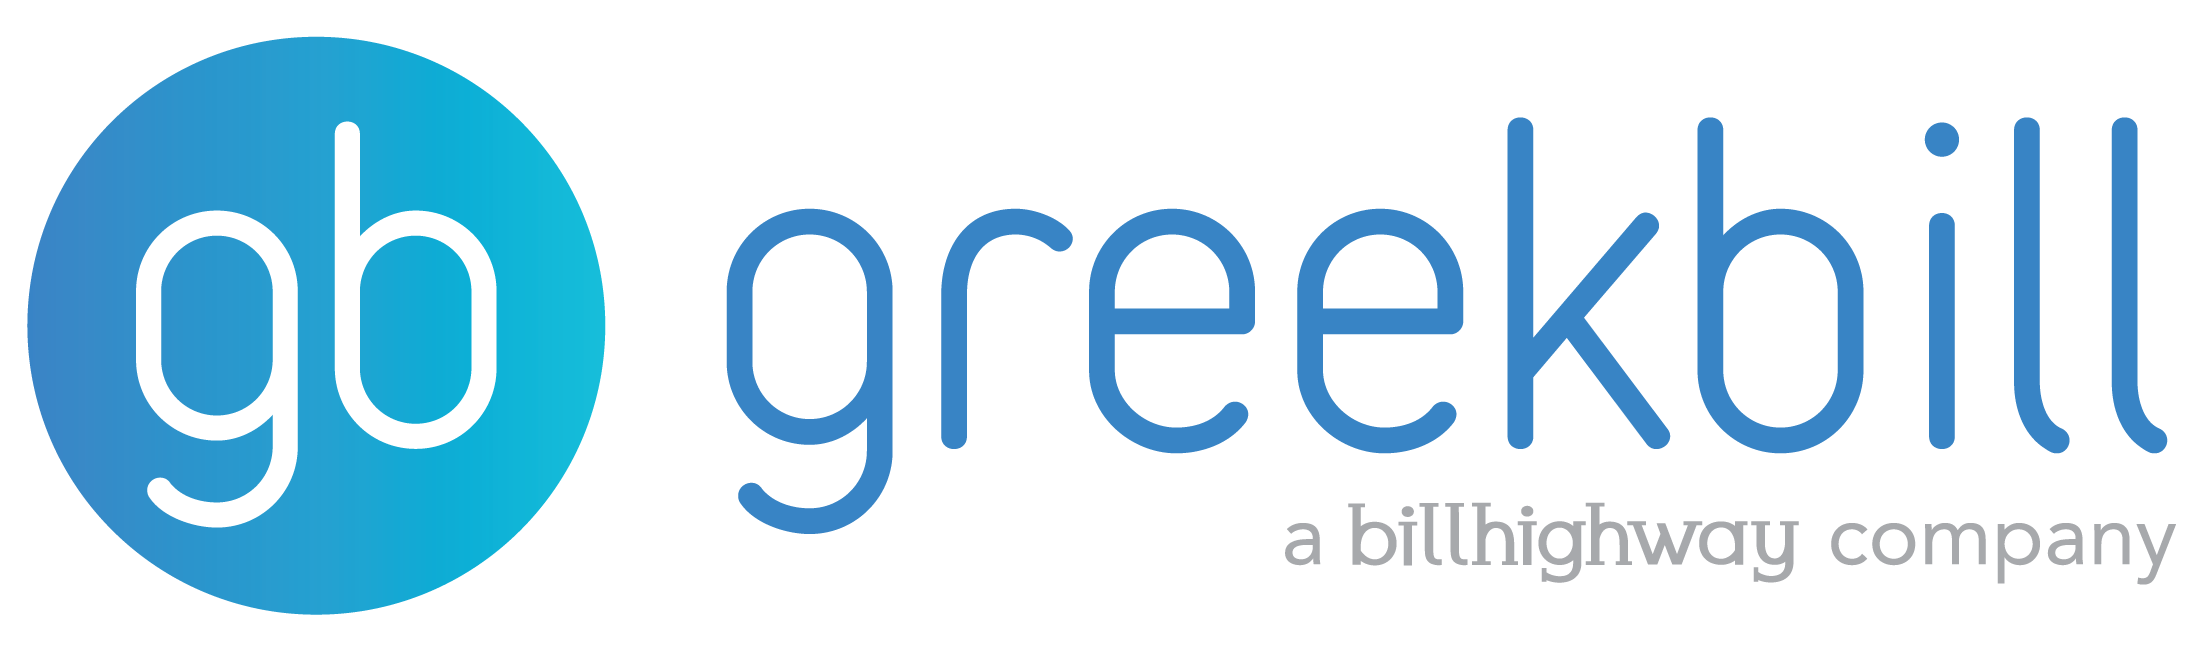 greekbill, a billhighway company, logo